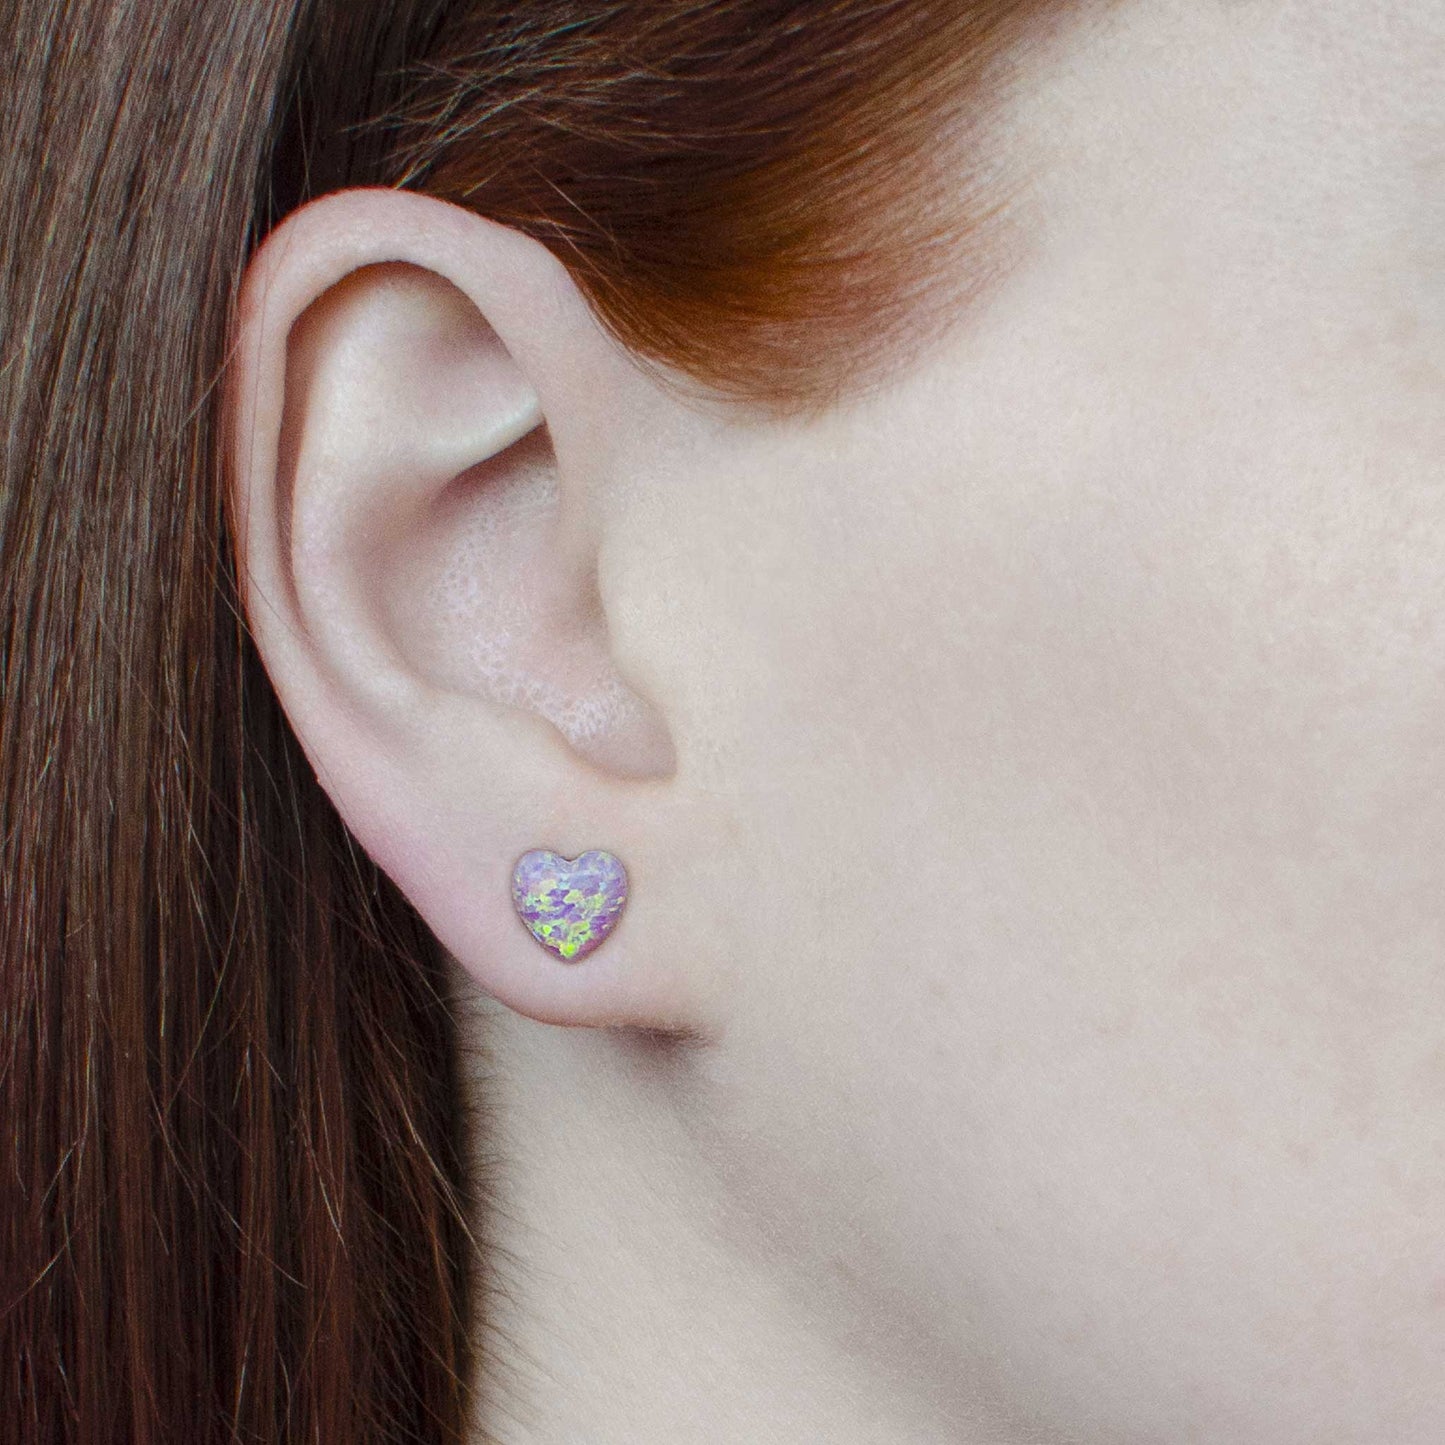 Woman wearing pink heart earrings in earlobe